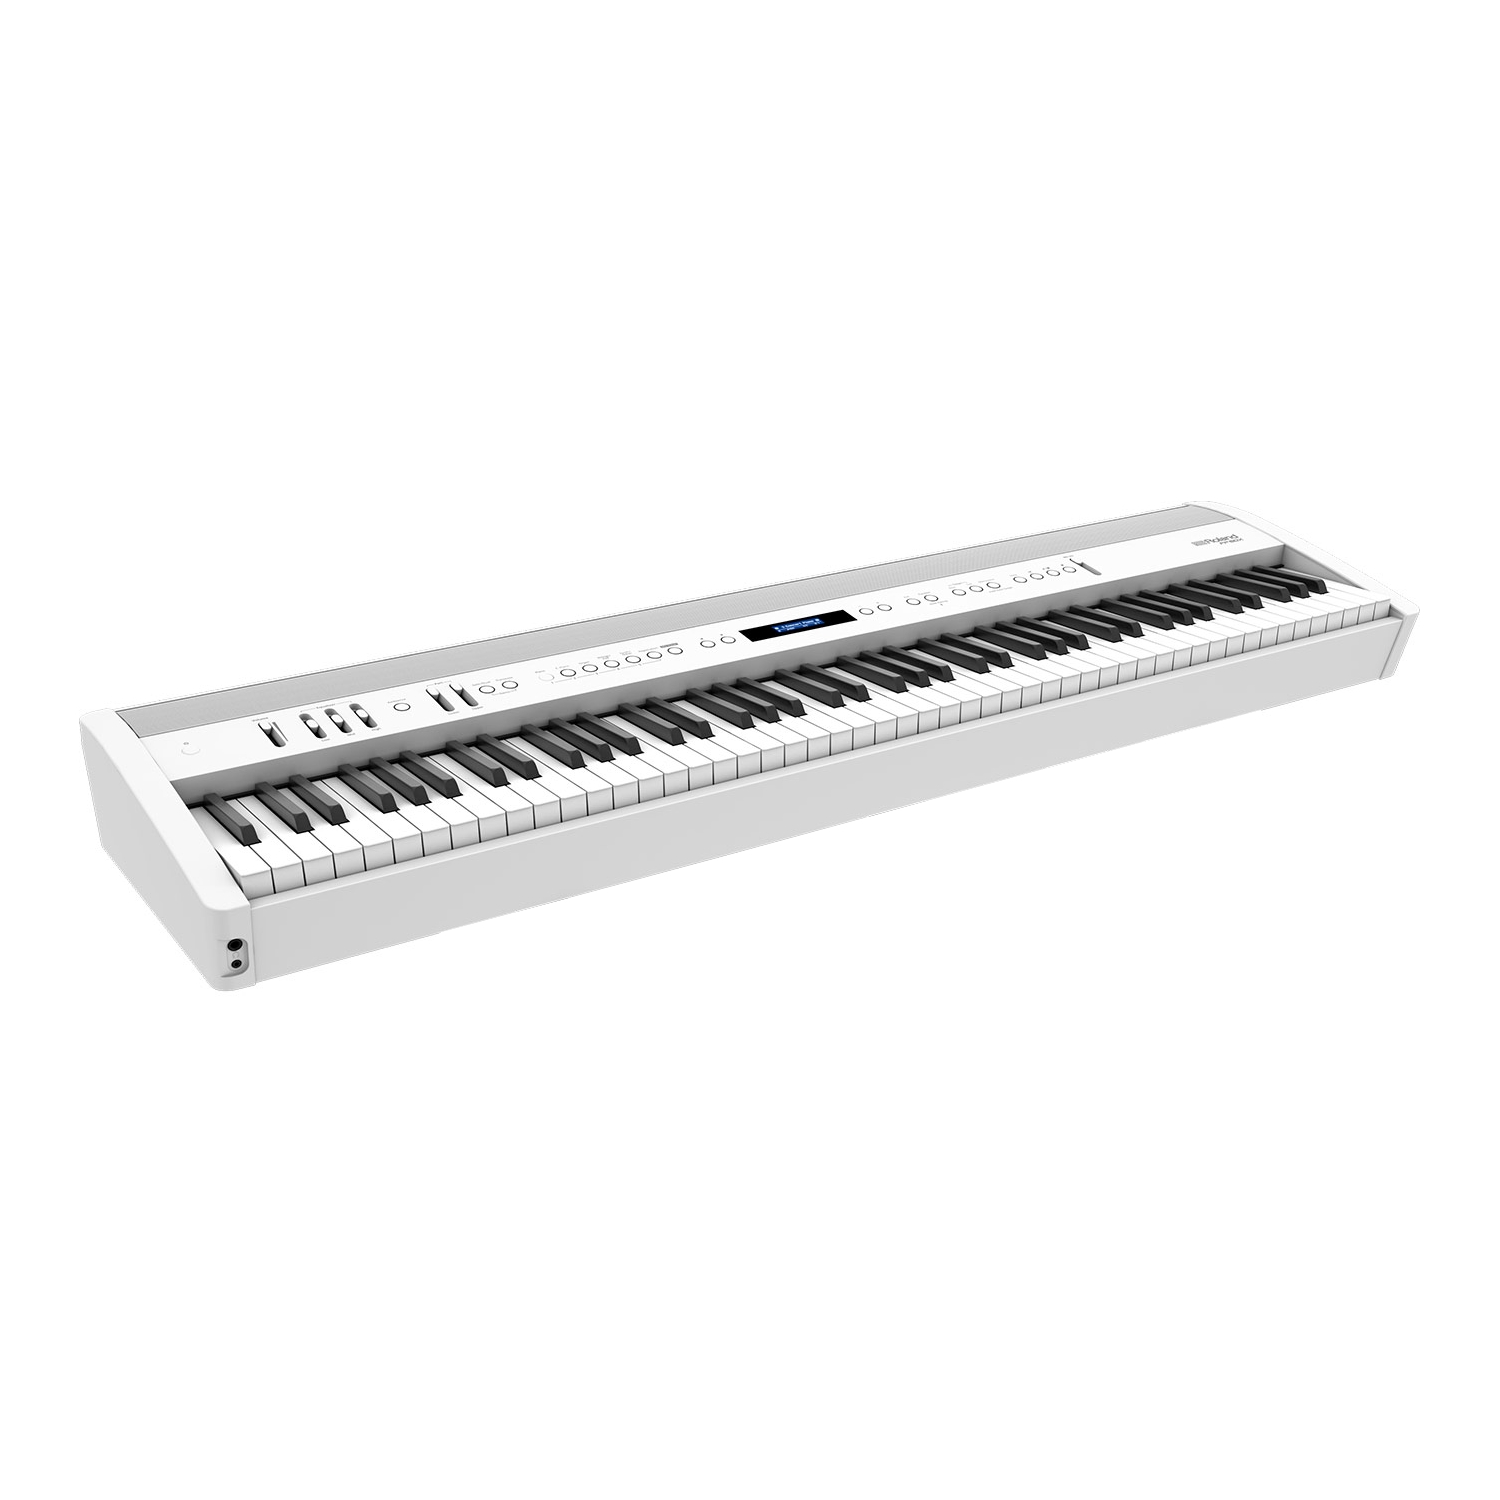 ROLAND FP-60X-WH - цифровое фортепиано, 88 кл. PHA-4 Standard, 358 тембров, 256 полиф., (цвет белый)